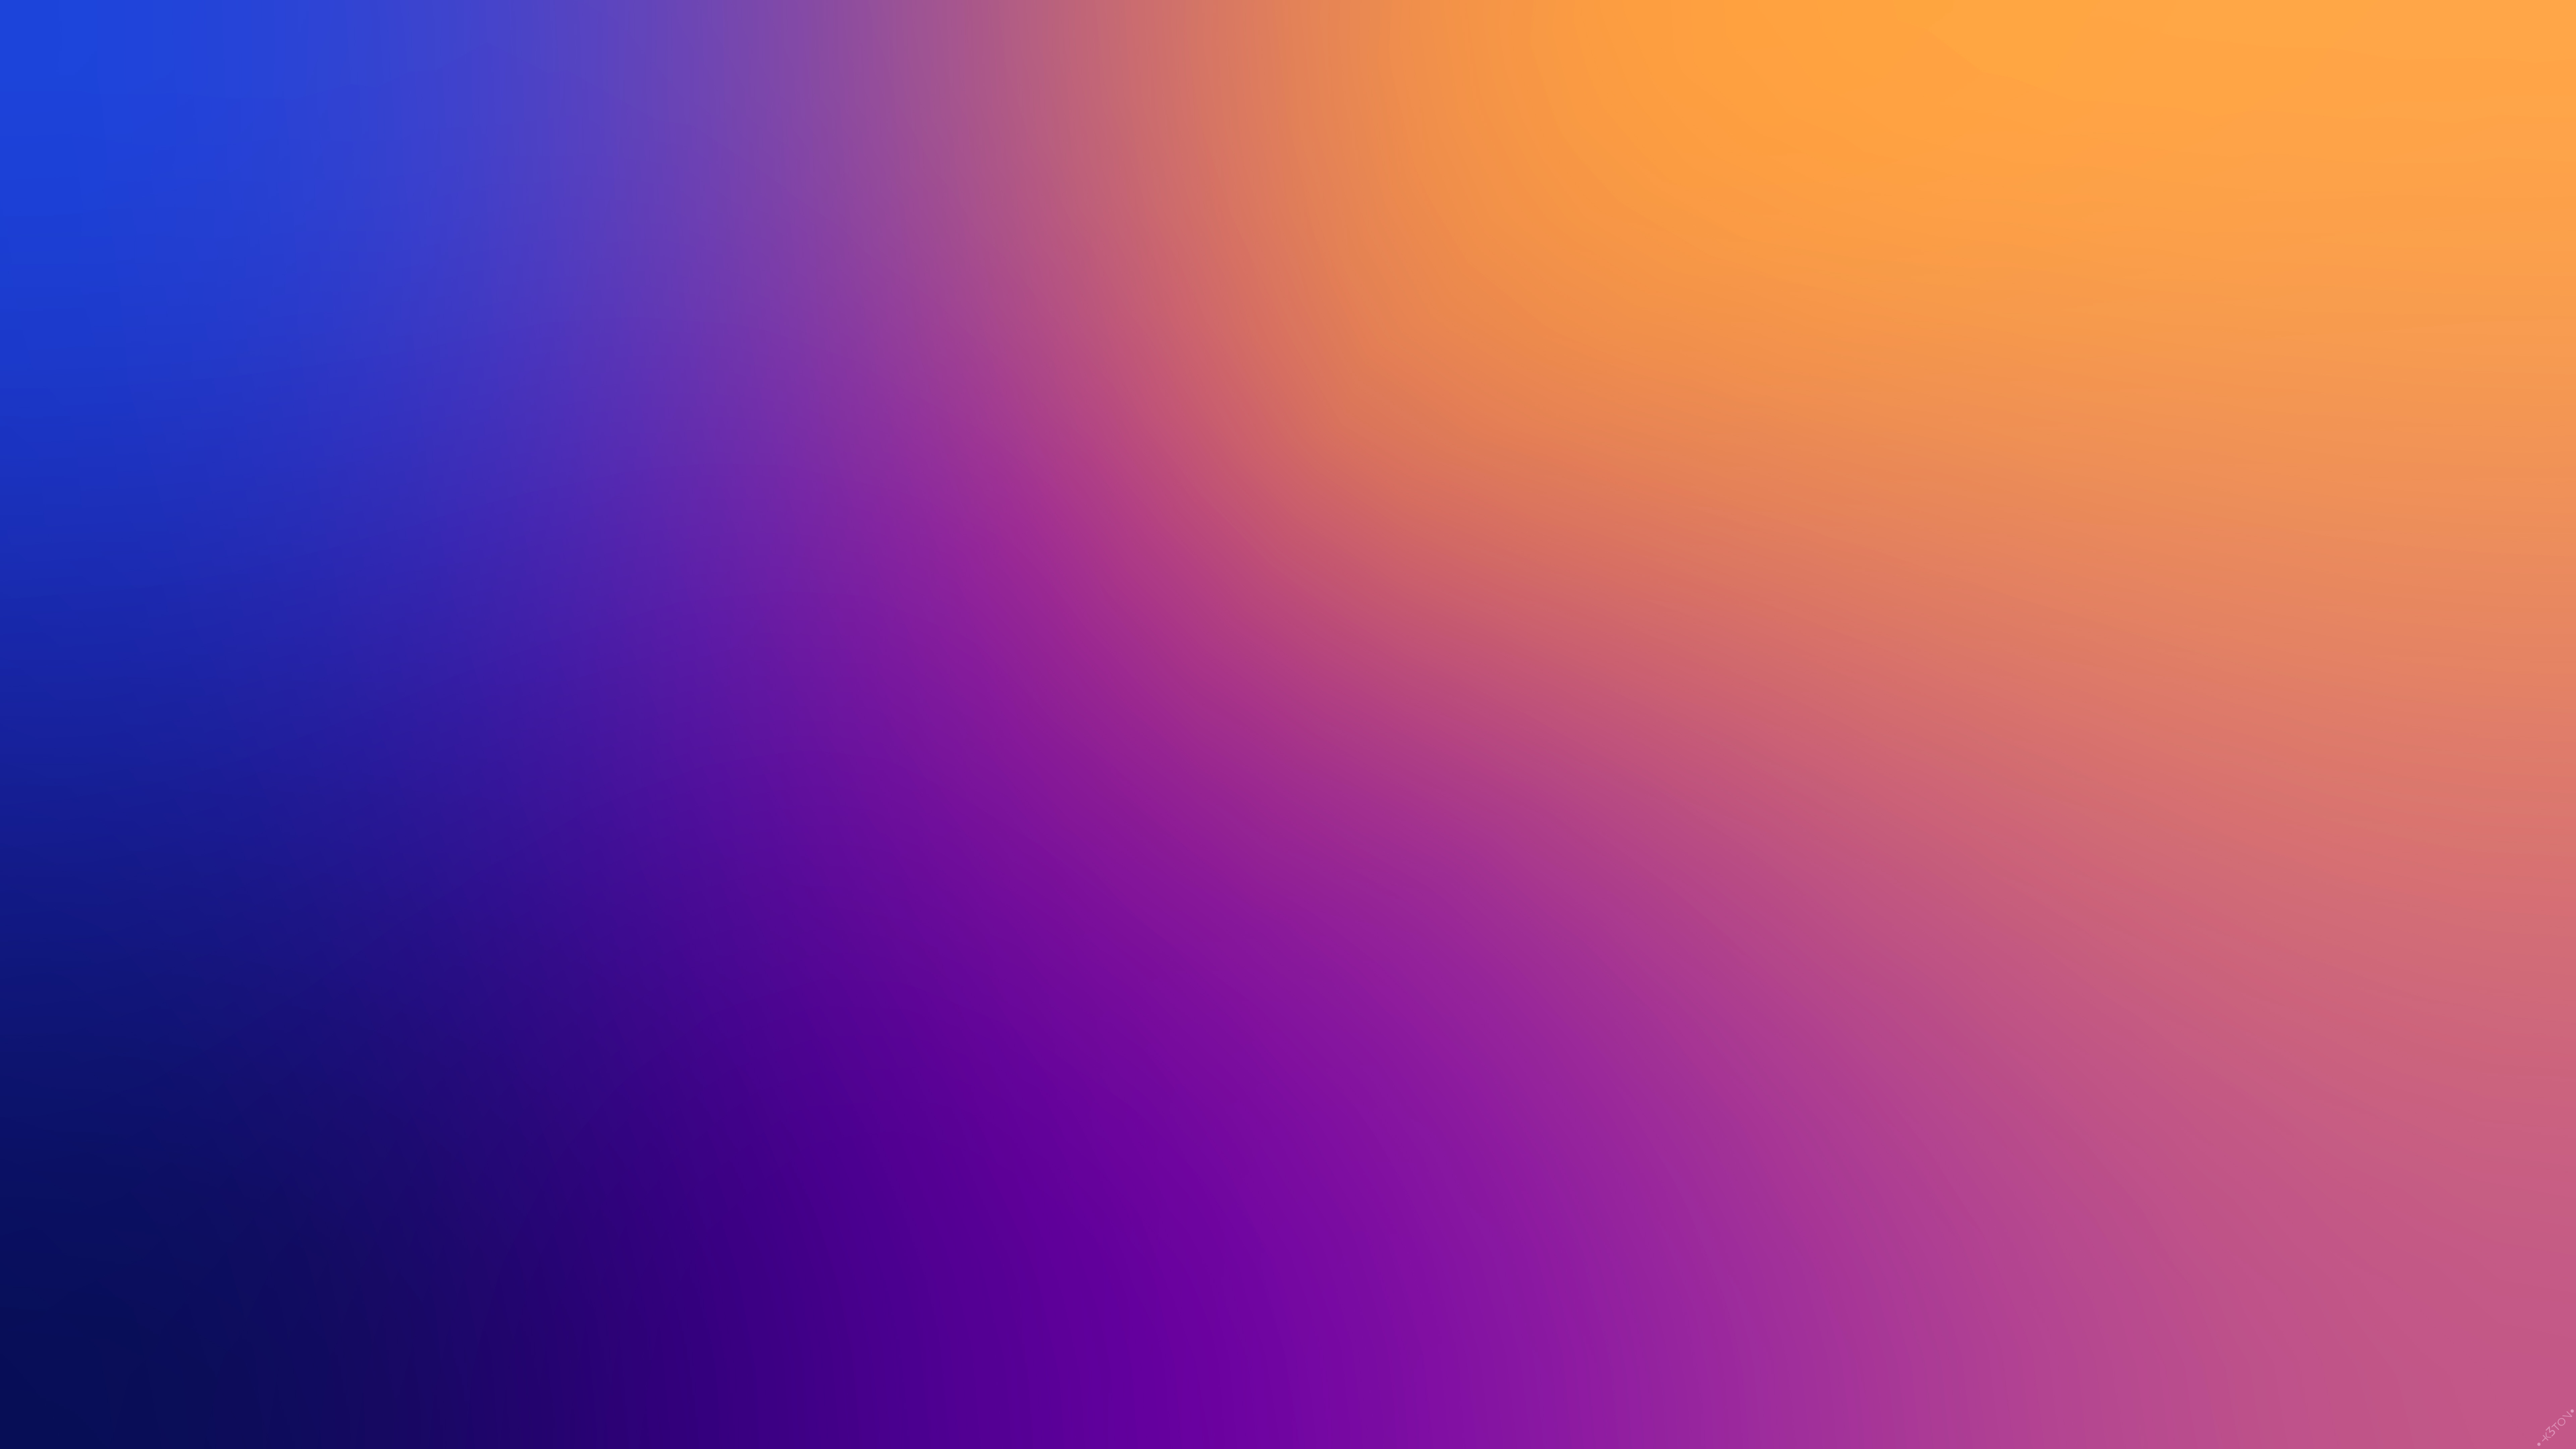 blur colors 4k 1633359394 - Blur Colors 4k - Blur Colors wallpapers, Blur Colors 4k wallpapers